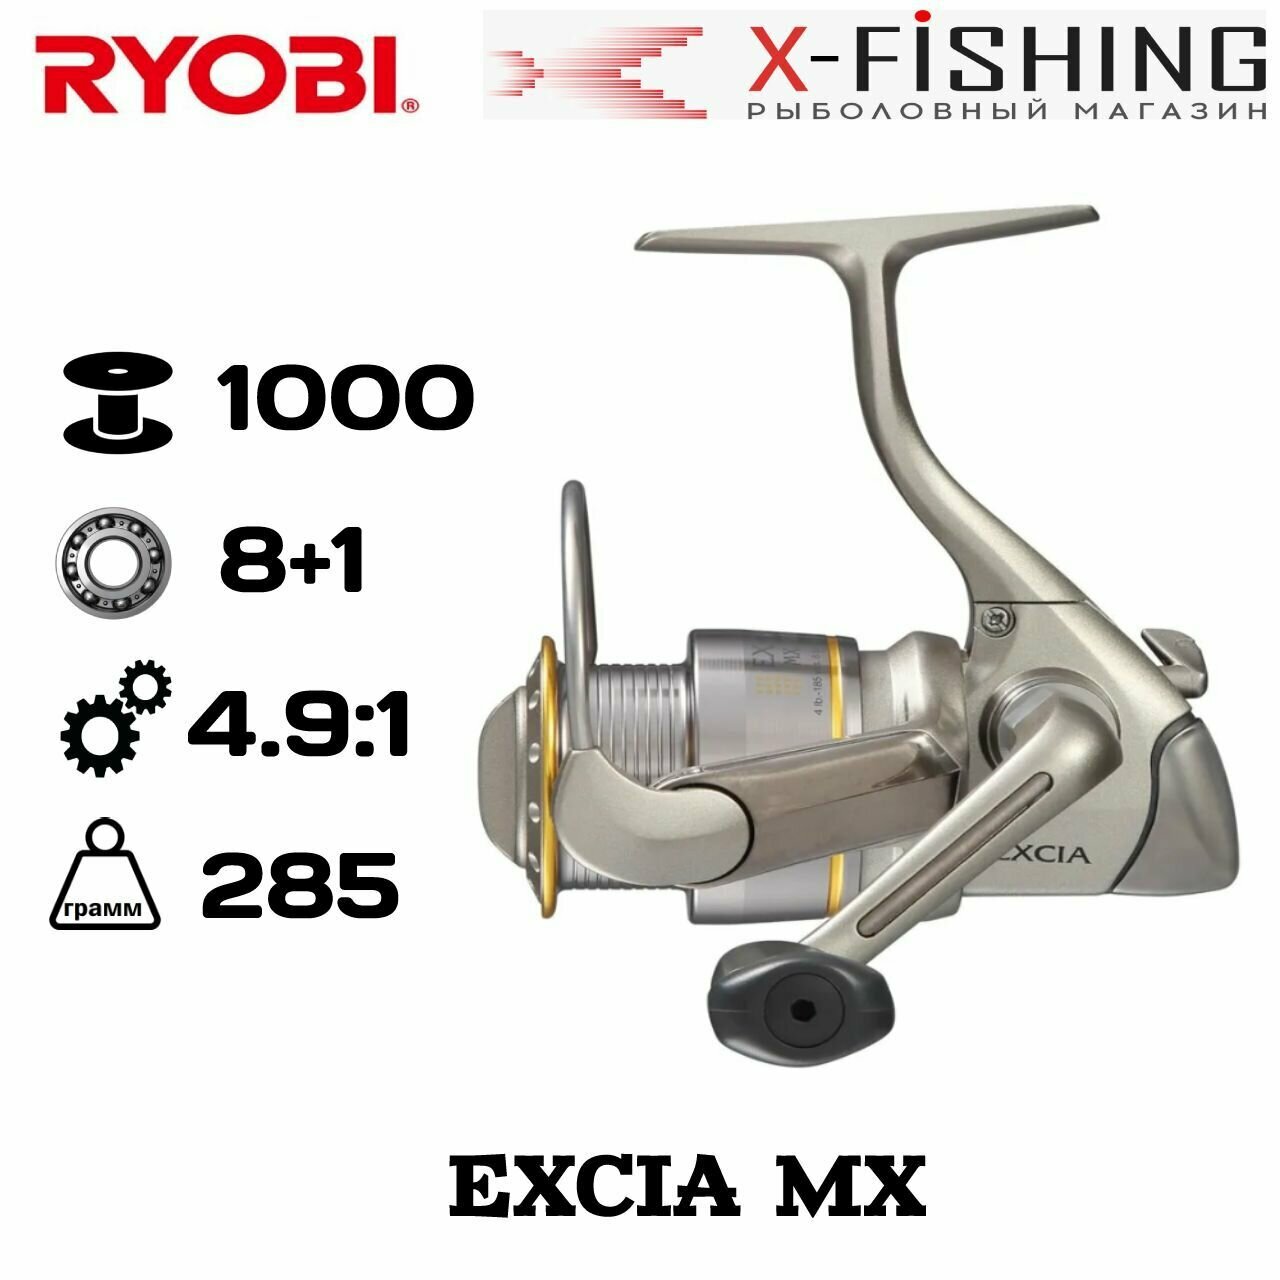 Катушка для рыбалки Ryobi Excia MX 1000